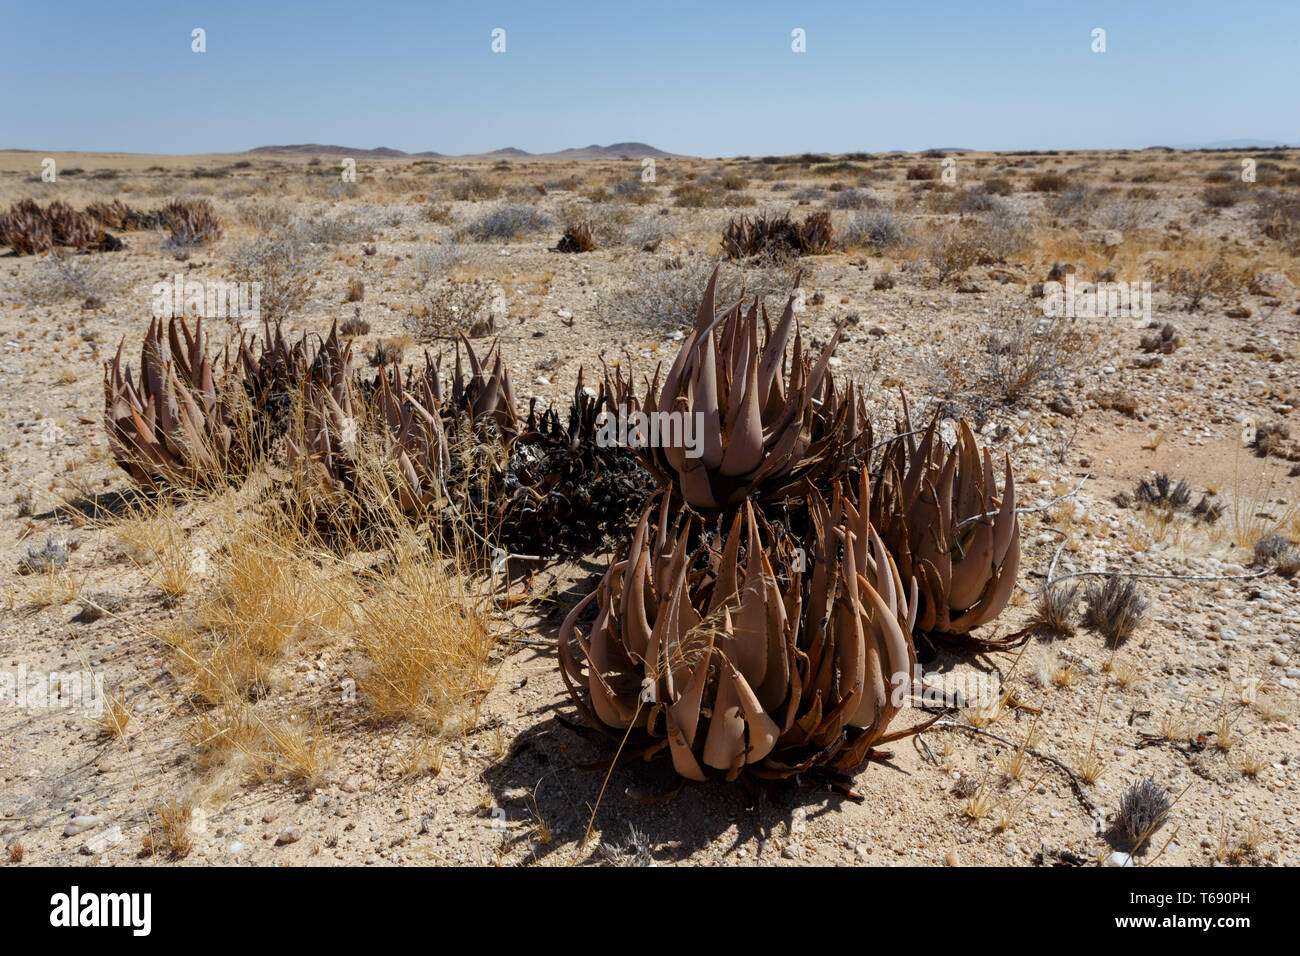 flowering aloe in the namibia desert Stock Photo